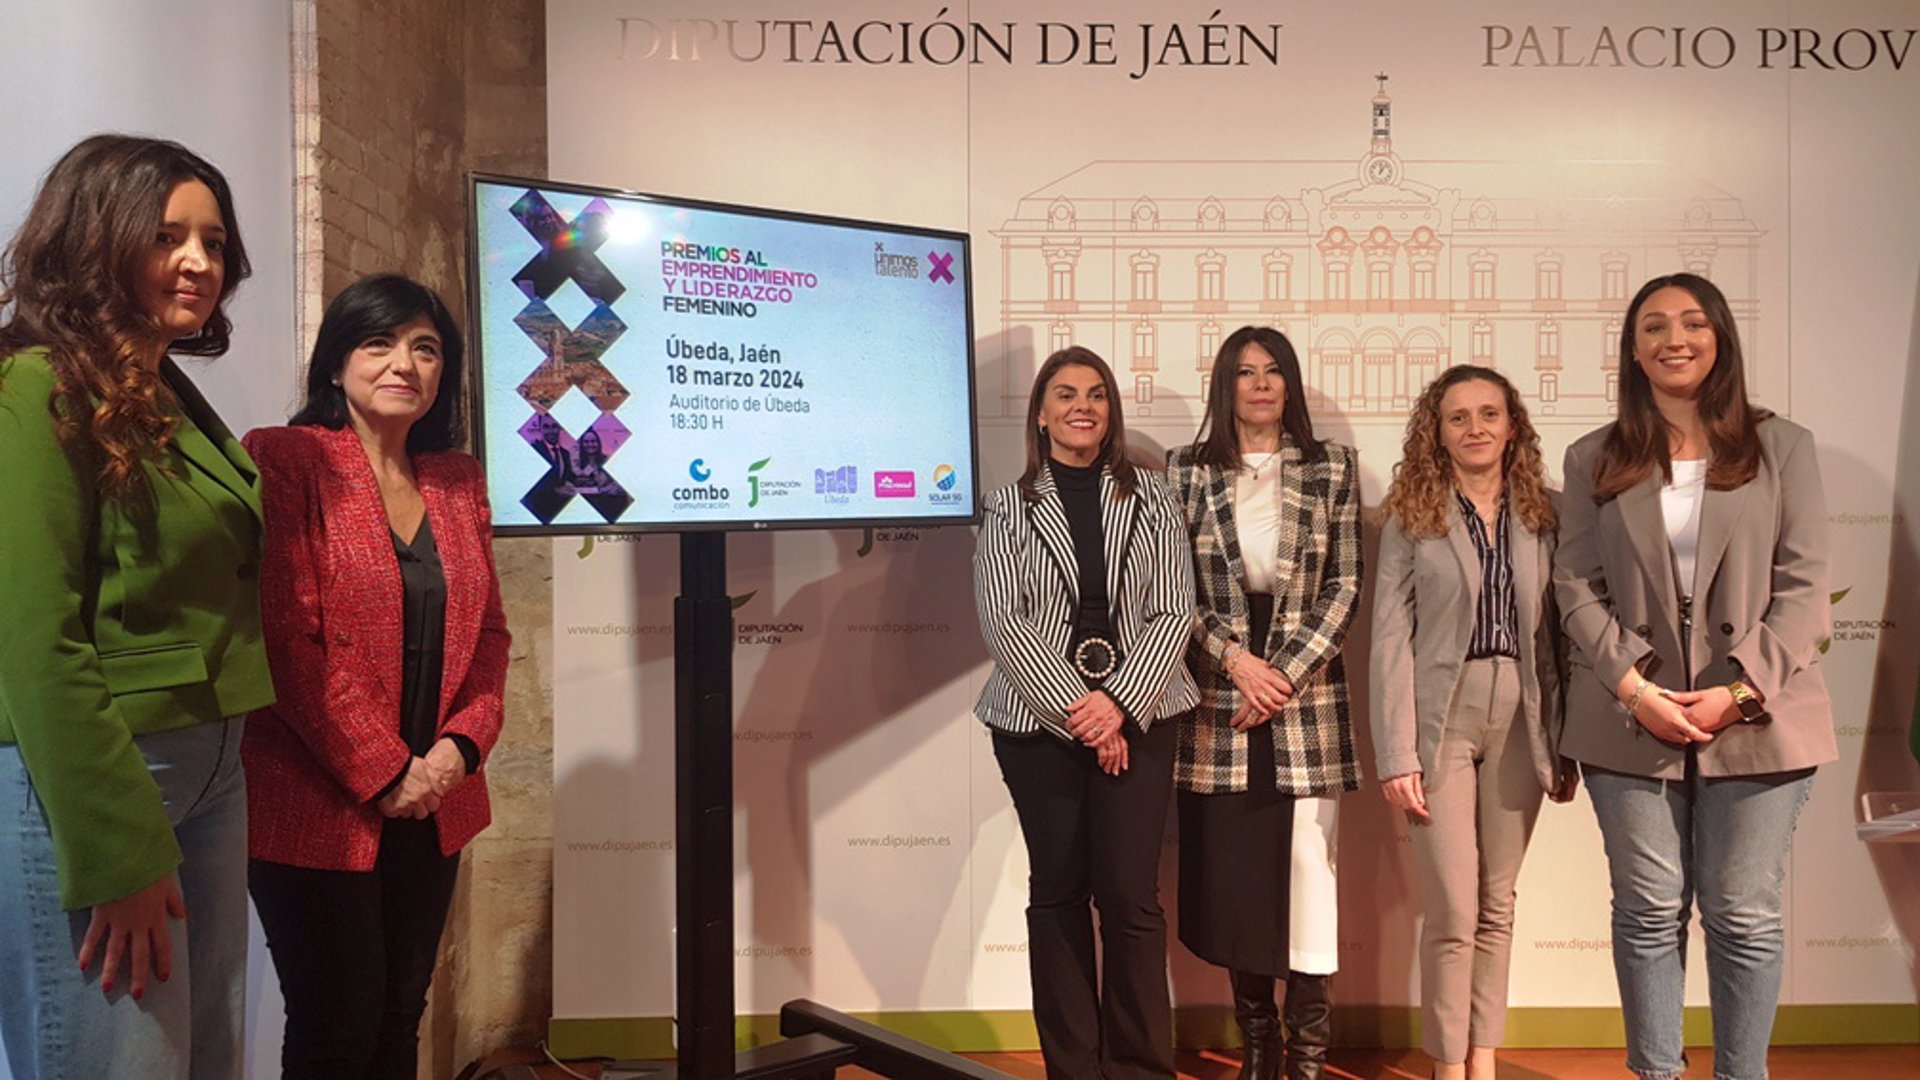 Los I Premios al Emprendimiento y Liderazgo Femenino reconocerán el talento de mujeres empresarias